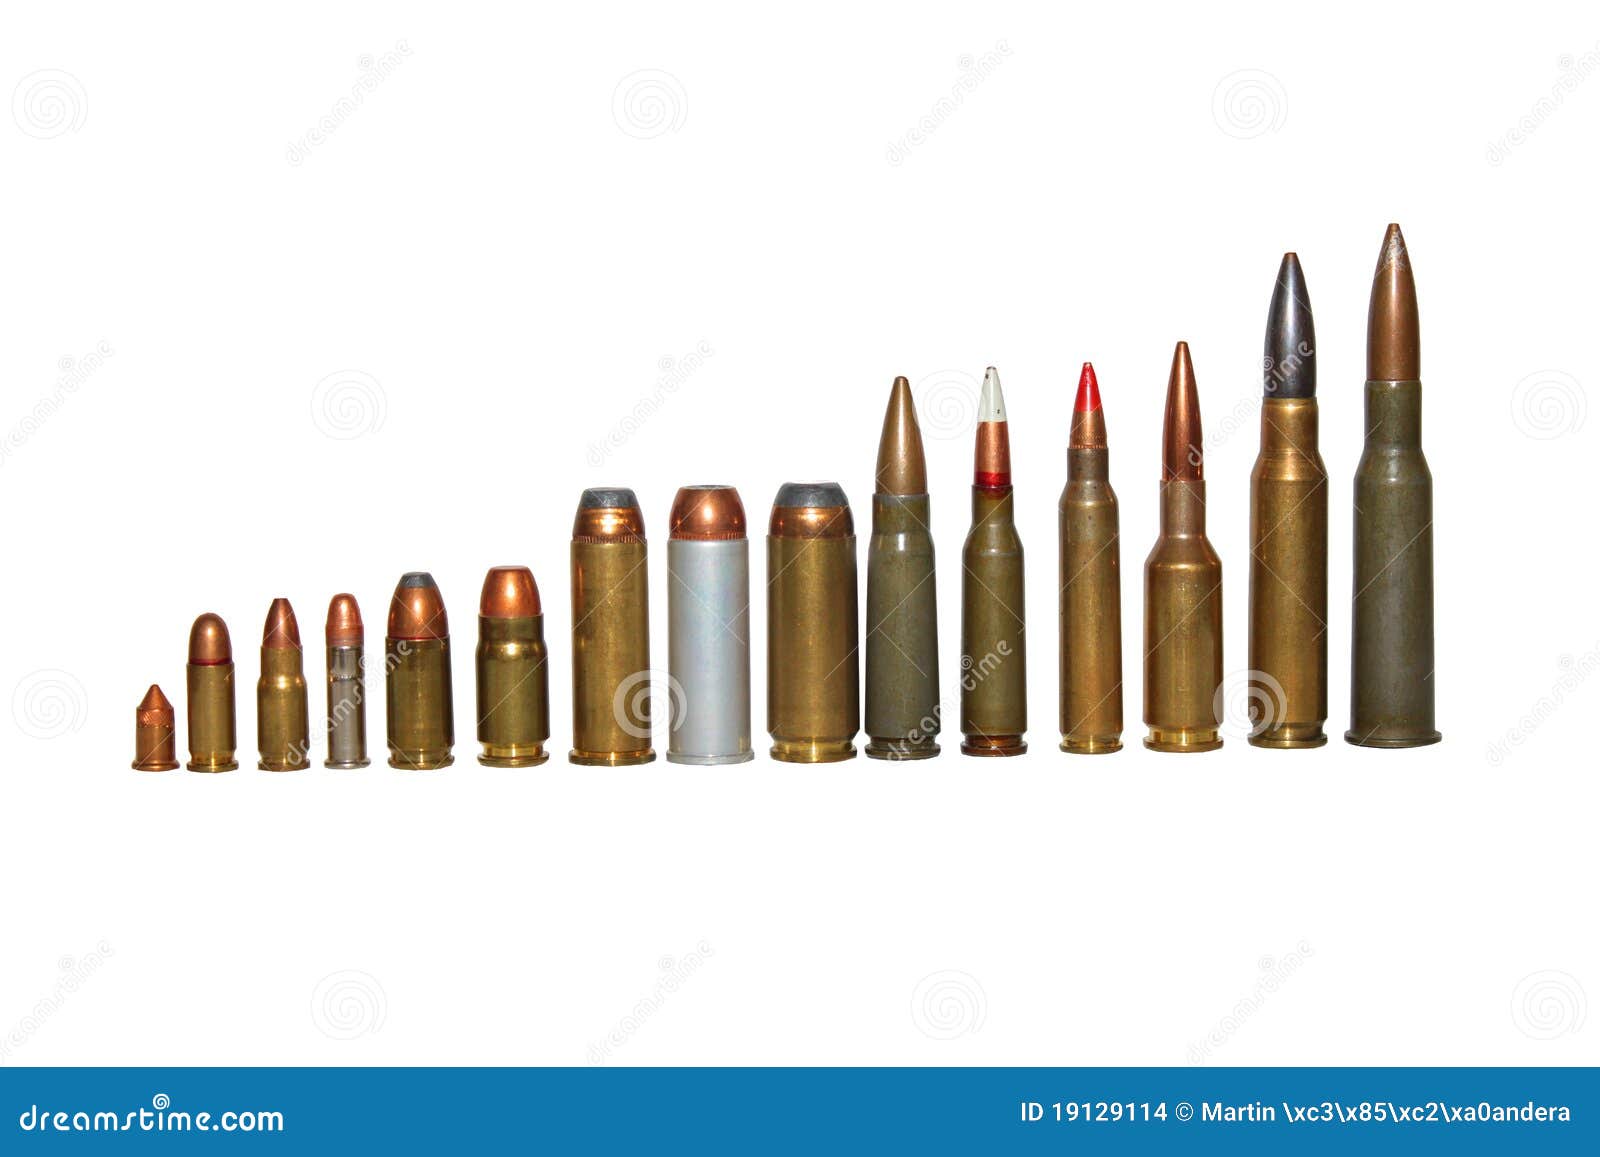 munition-der-verschiedenen-kaliber-getrennt-19129114.jpg